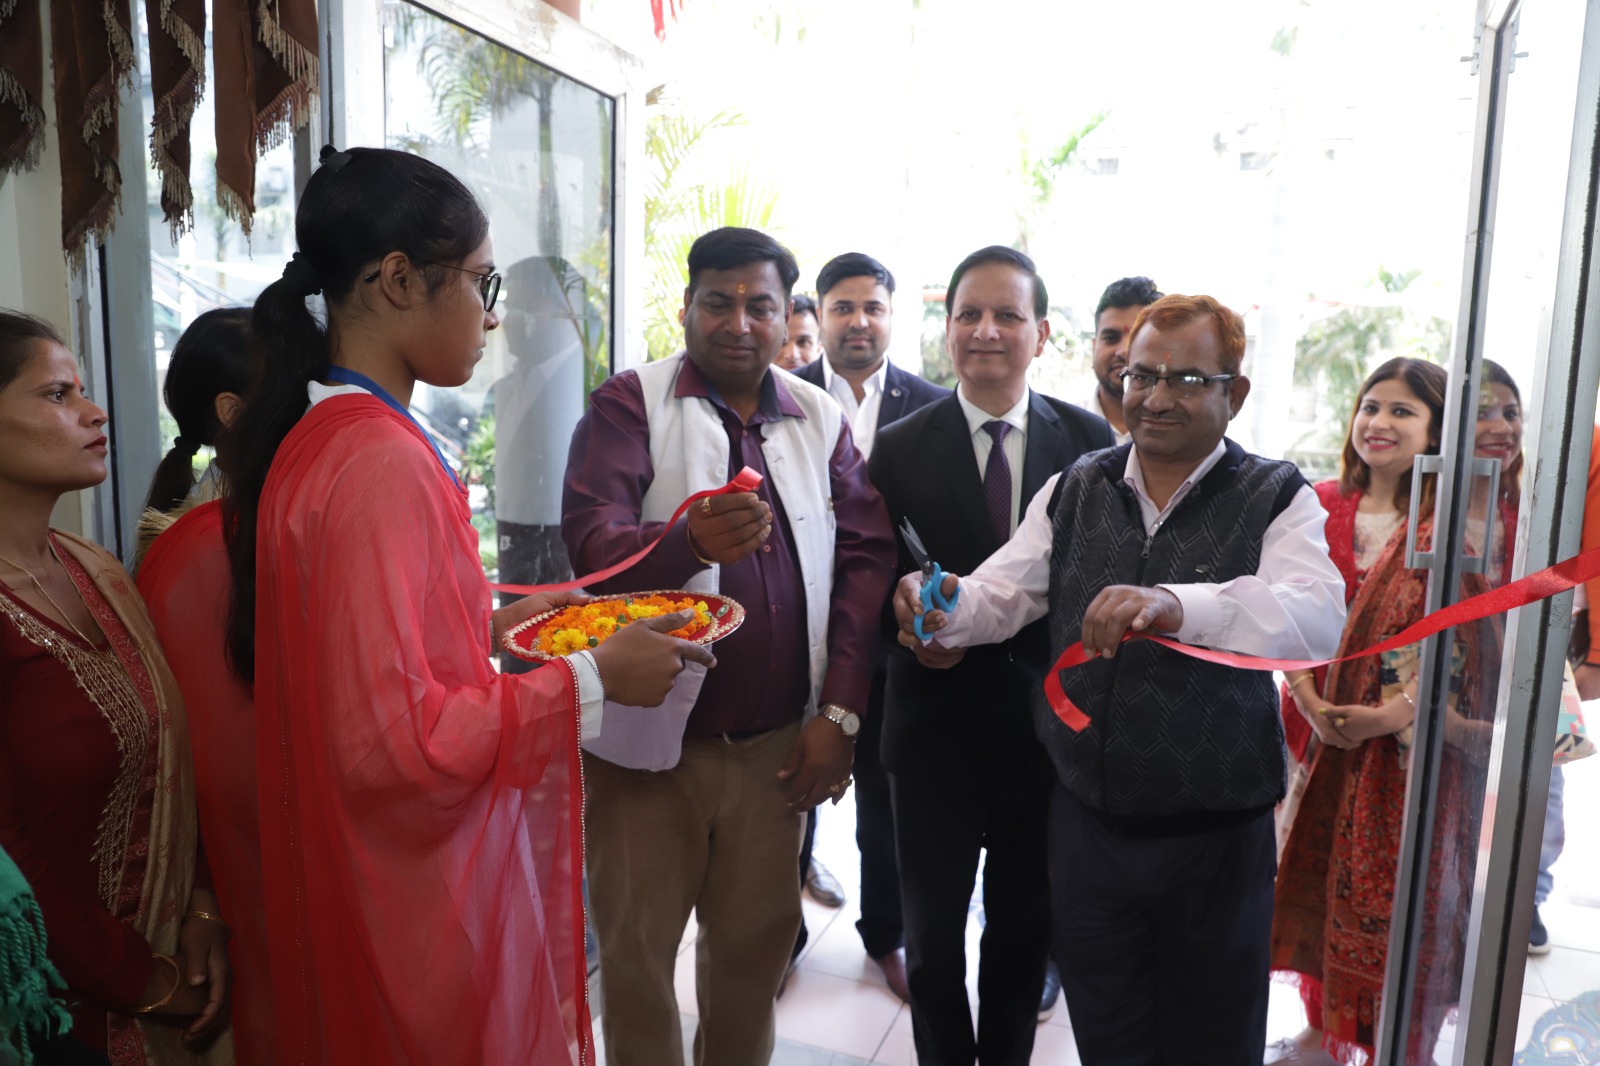 बिशंभर सहाय ग्रुप आफ इंस्टीट्यूशंस के संस्थापक अध्यक्ष स्वर्गीय पंडित रूप चंद शर्मा जी की १४वी पुण्यतिथि पर एक नेशनल वर्कशॉप का किया गया आयोजन